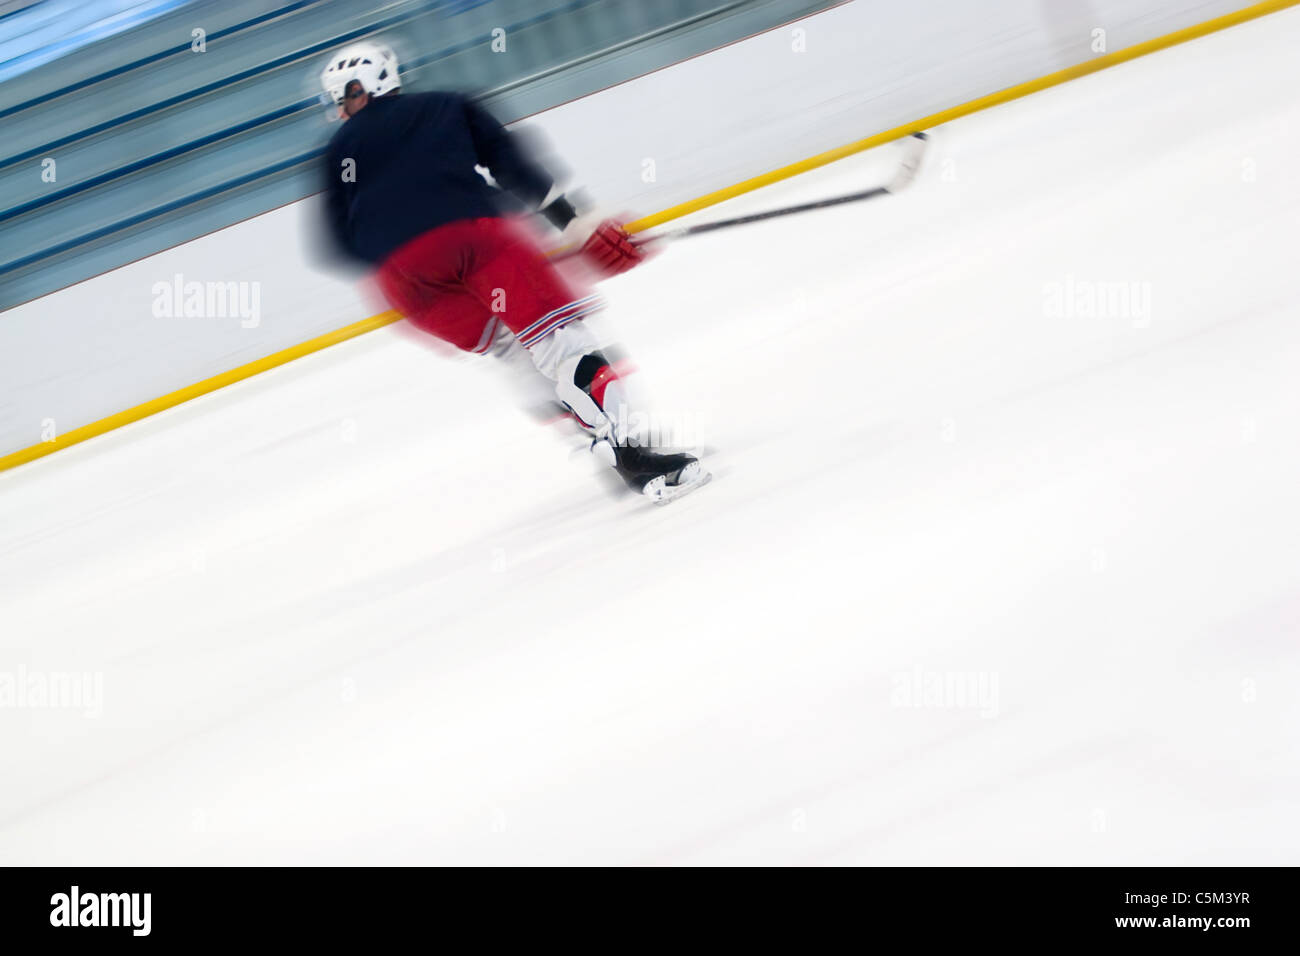 Résumé flou de mouvement d'un joueur de hockey alors qu'il patine sur la glace. Léger flou de mouvement et de profondeur de champ. Banque D'Images